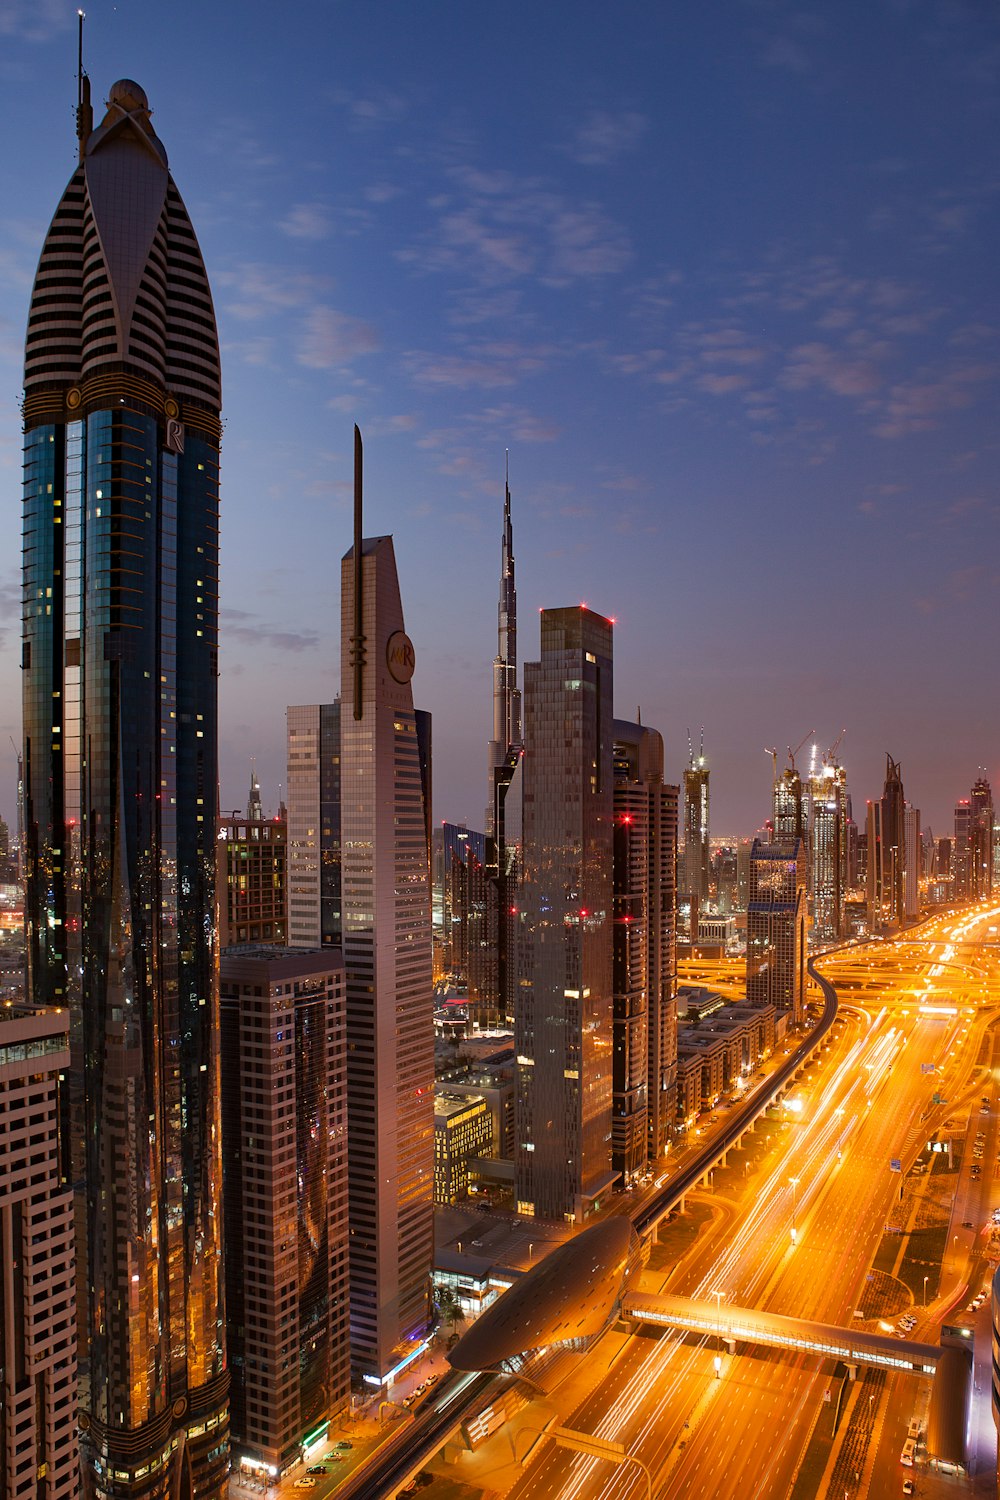 City Of Dubai: Top Places You Should Visit